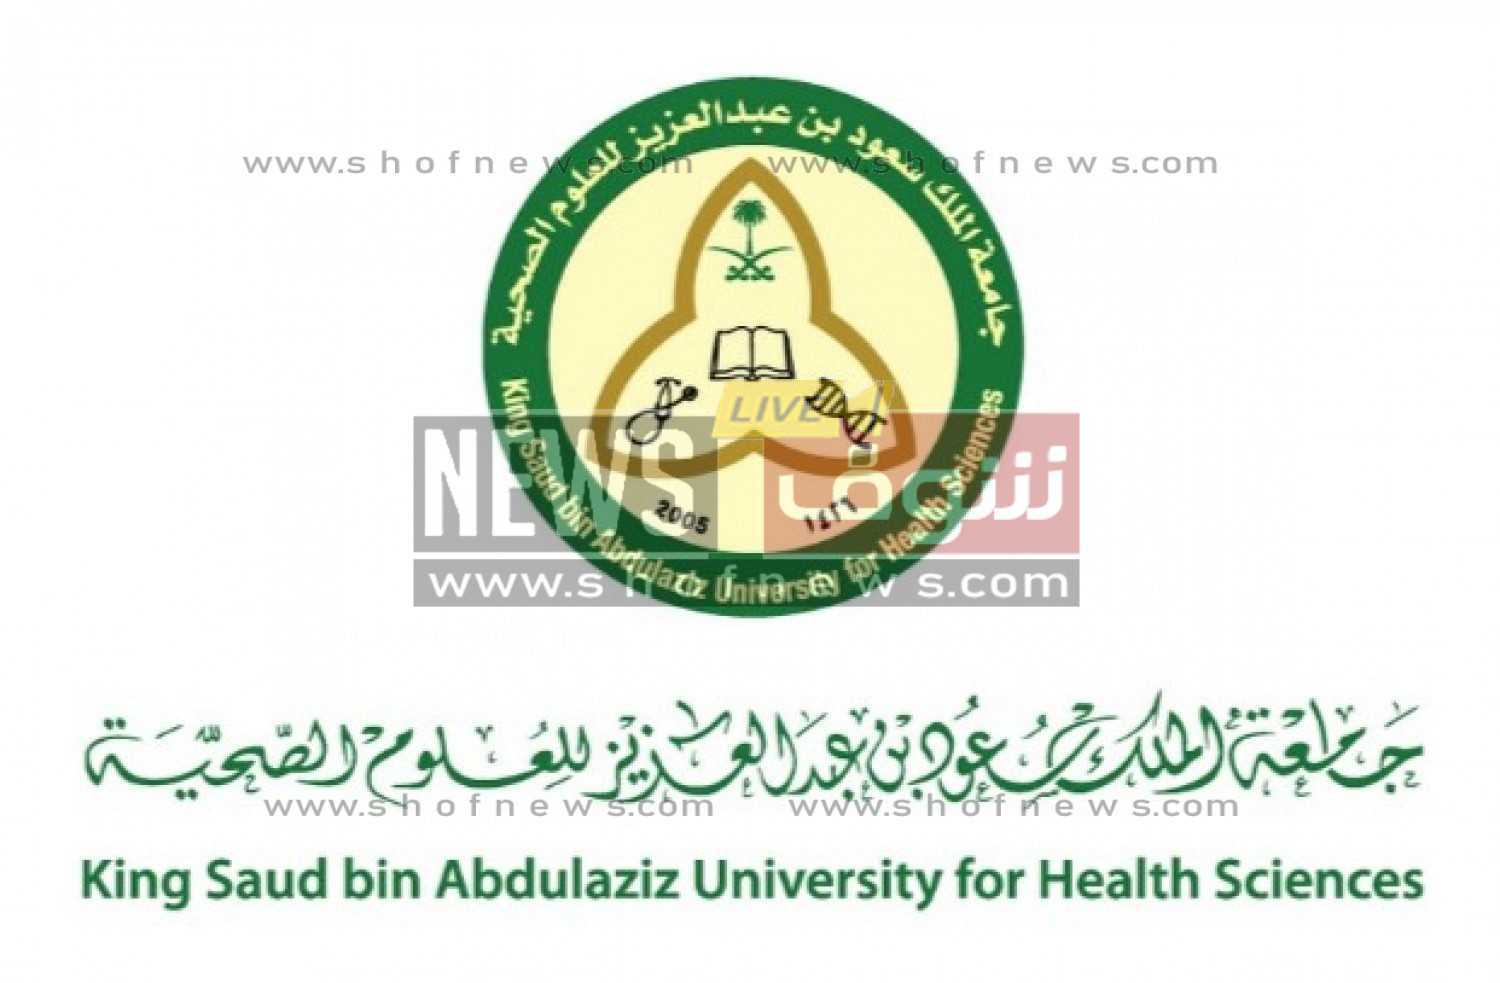 رابط وظائف جامعة الملك سعود